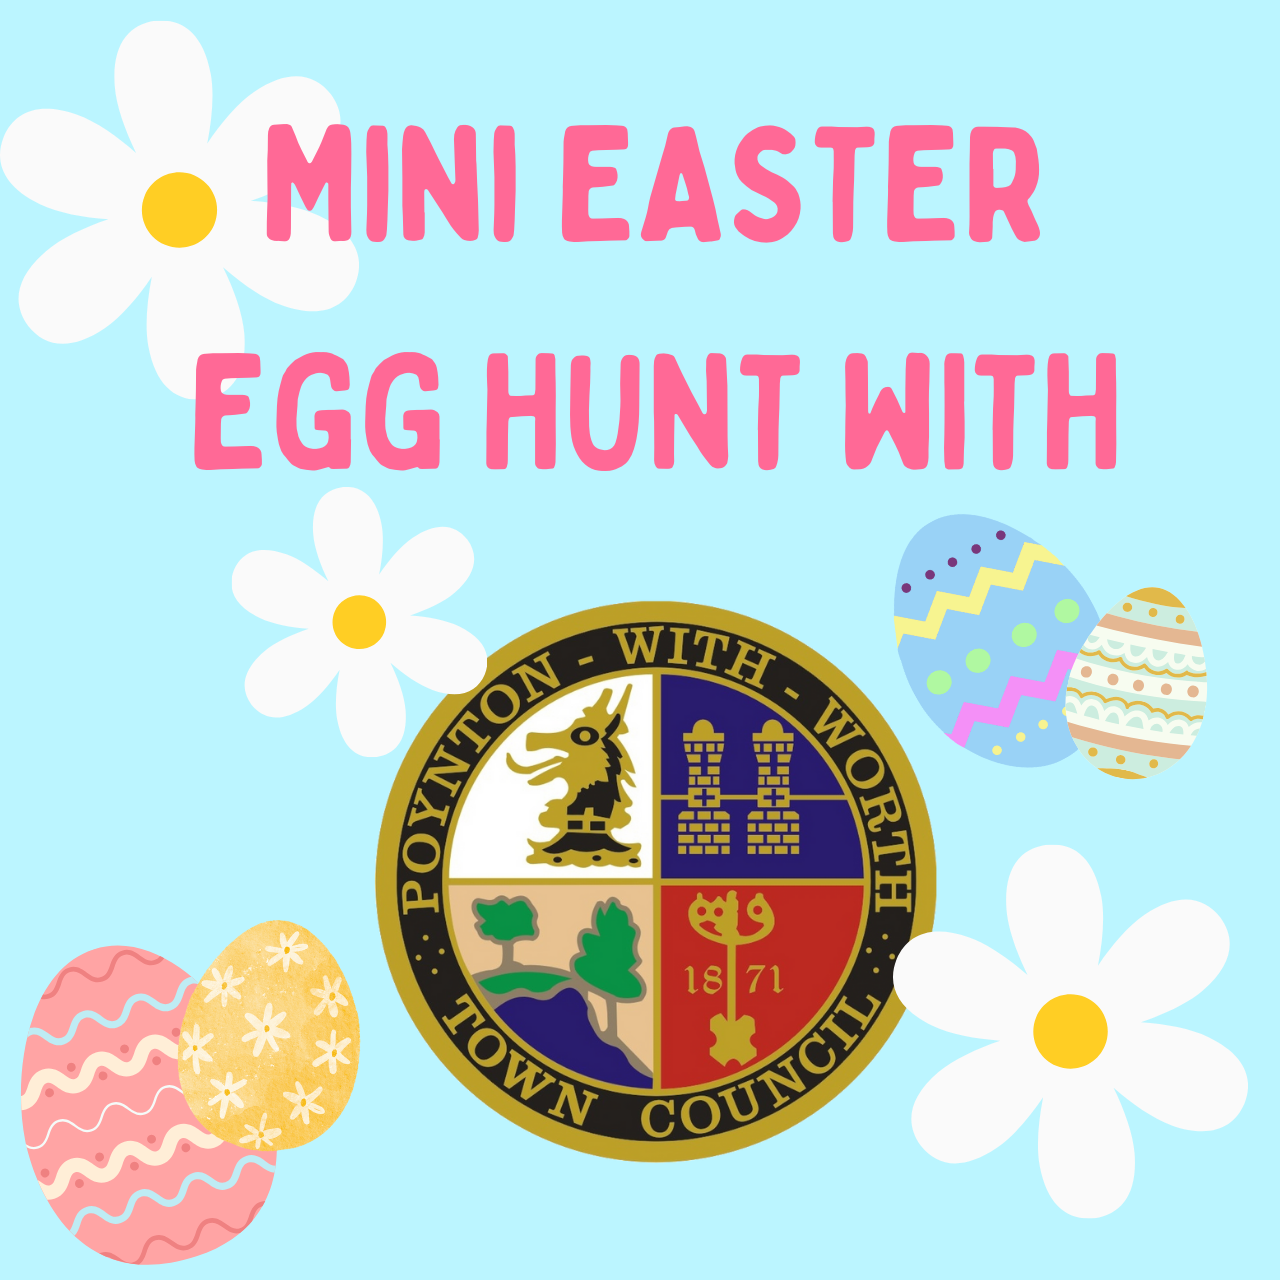 EVENT: Mini Easter Egg Hunt